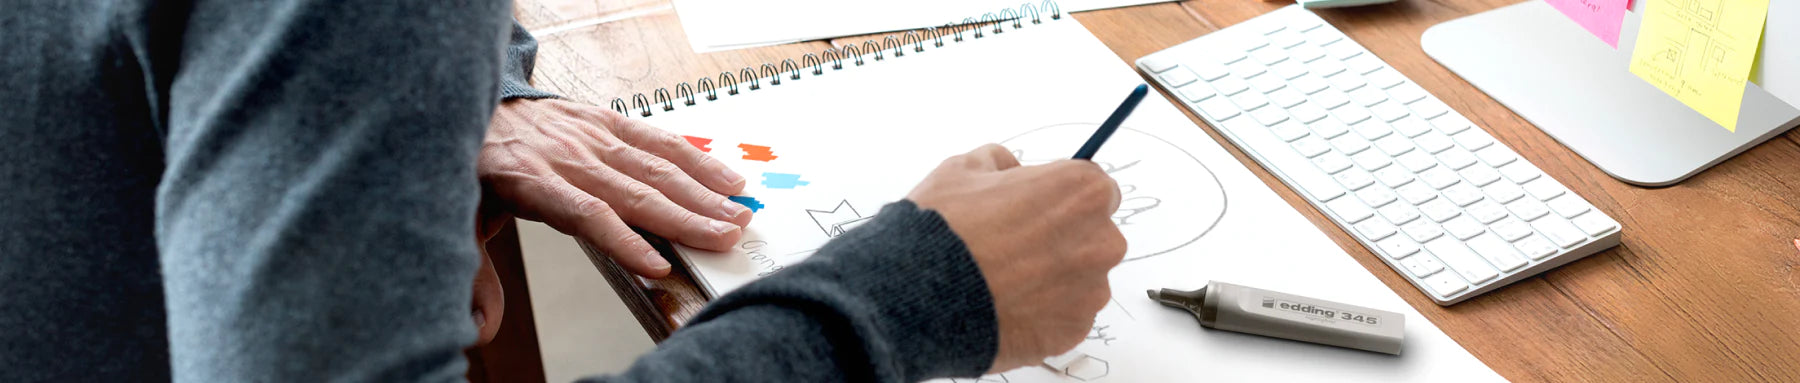 Eine Person skizziert ein Designkonzept auf einem Notizblock neben einer Tastatur, wobei verschiedene Designwerkzeuge und Haftnotizen in Reichweite sind.